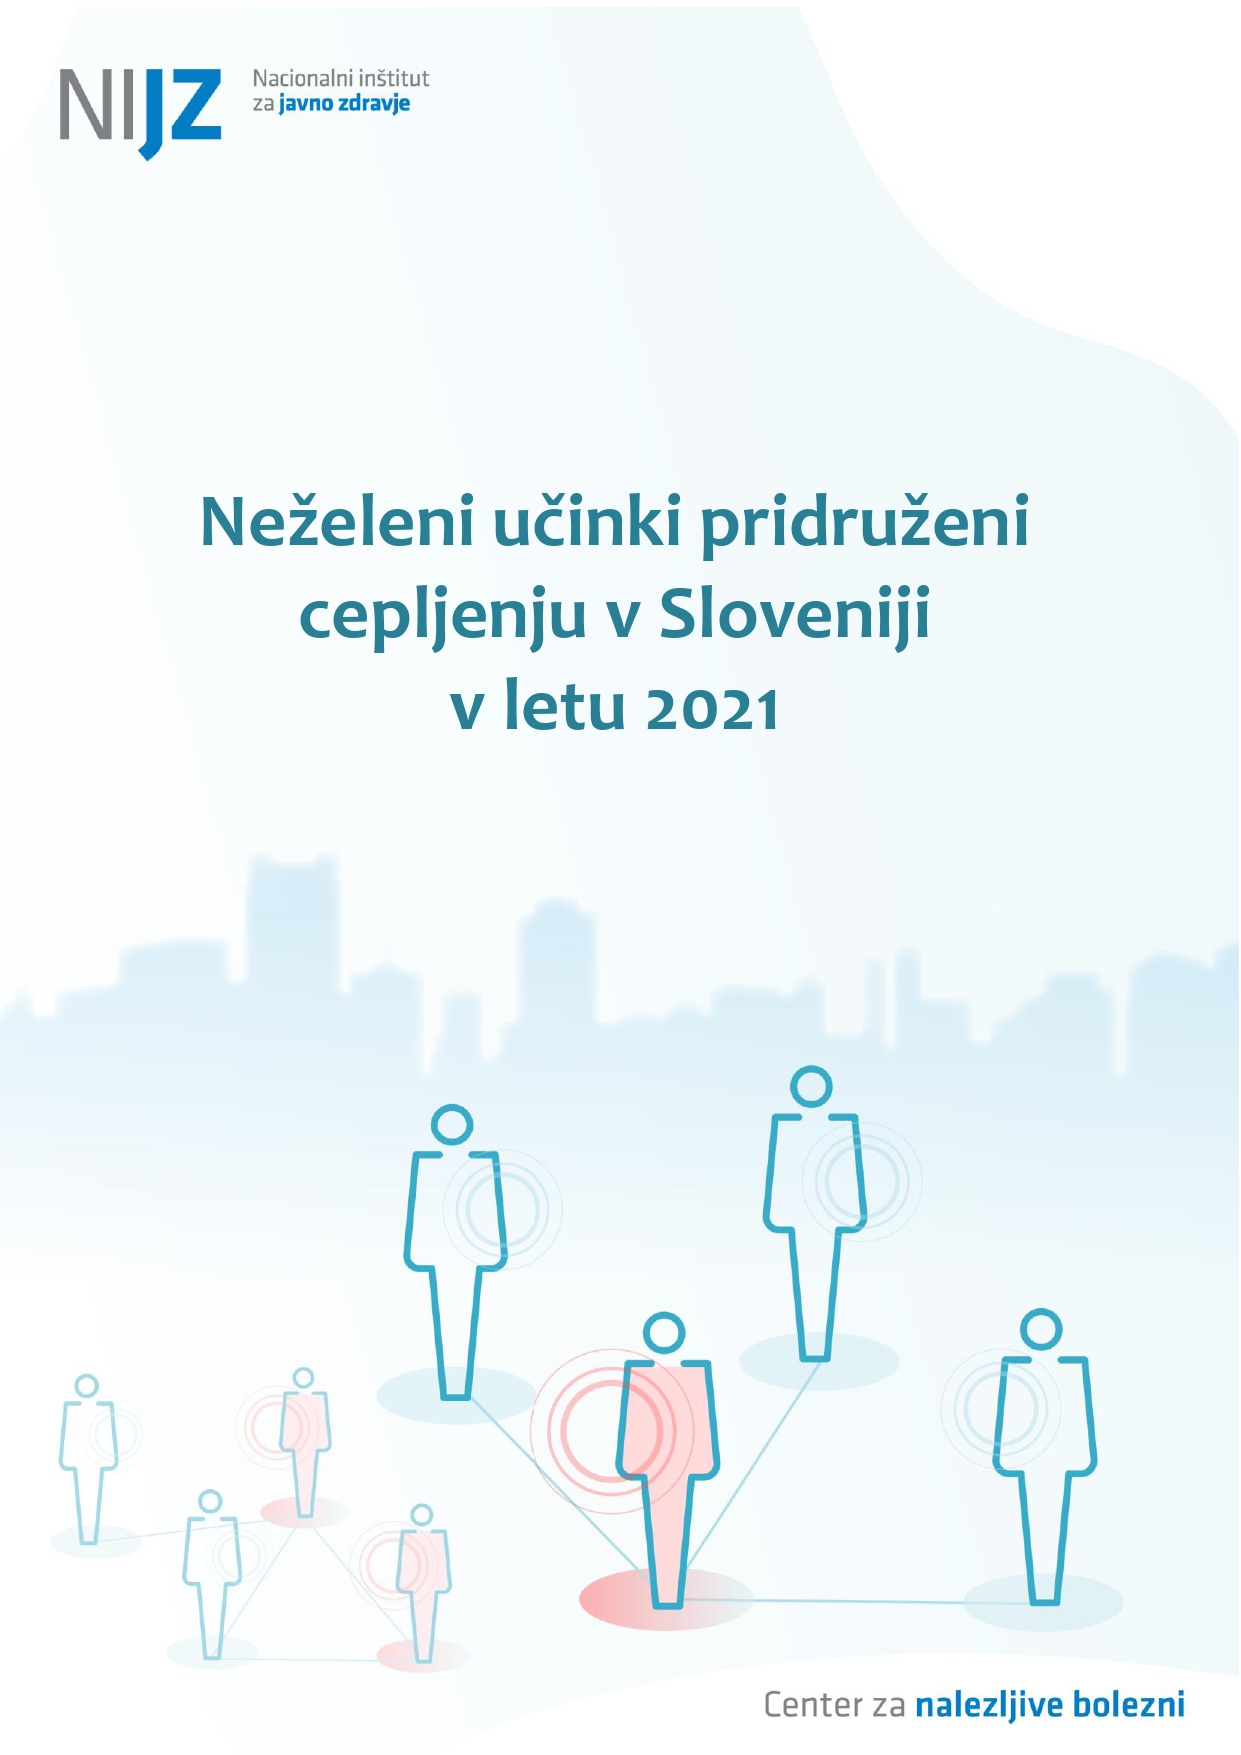 Neželeni učinki pridruženi cepljenju v Sloveniji v letu 2021